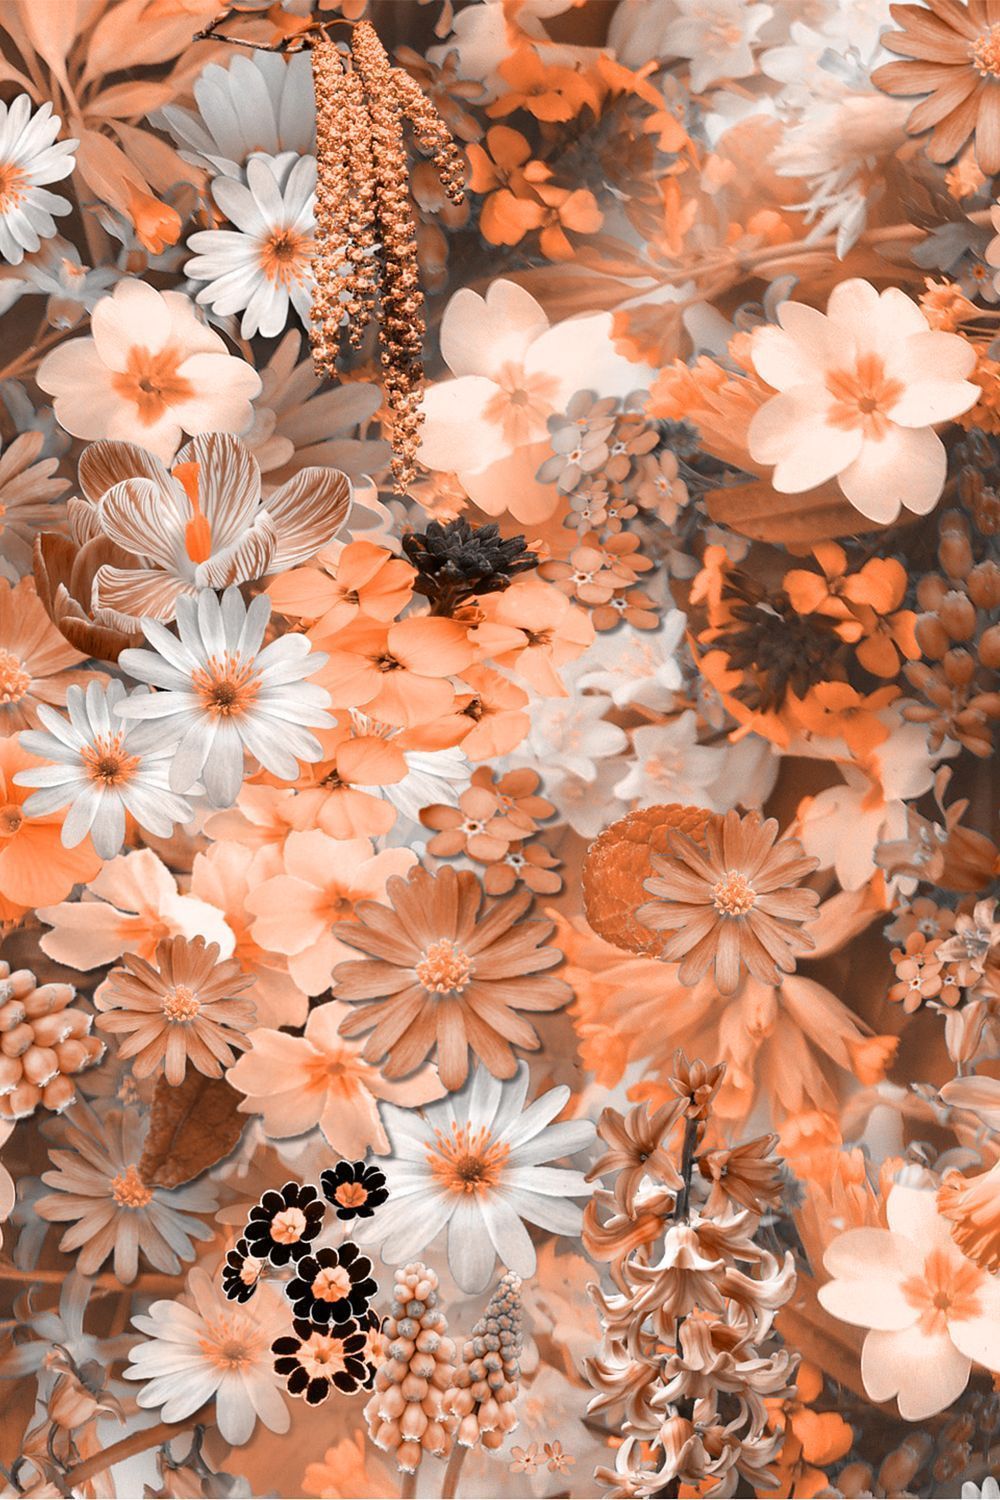 flower wallpaper HD free download #Flower #Wallpaper #Cute. Best flower wallpaper, Flower wallpaper, Beautiful flowers wallpaper